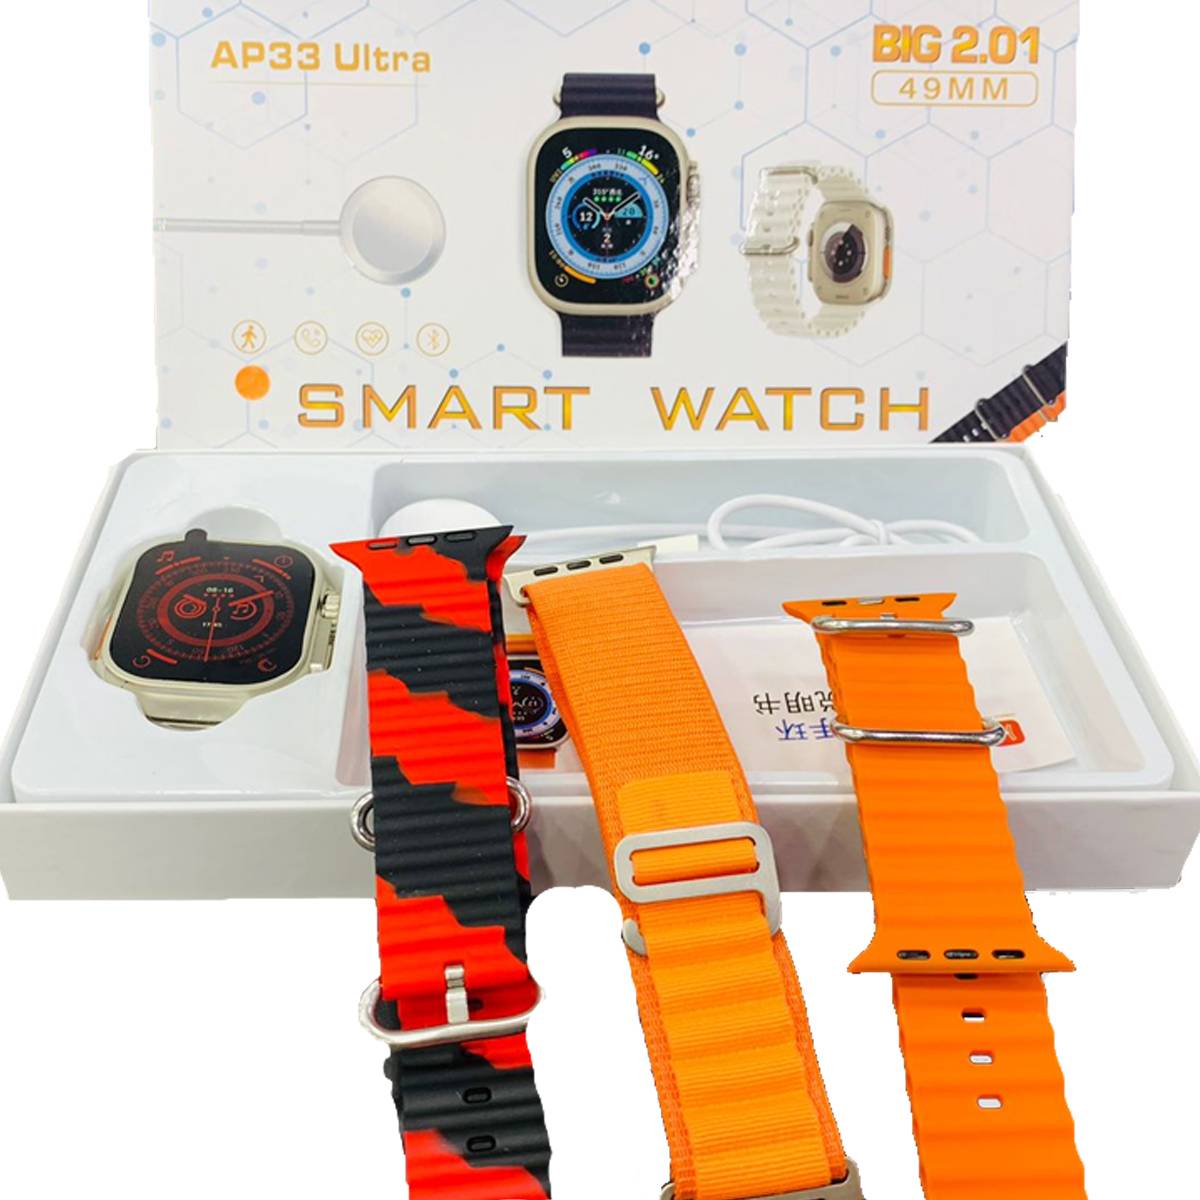 AP33 Ultra Smart Watch